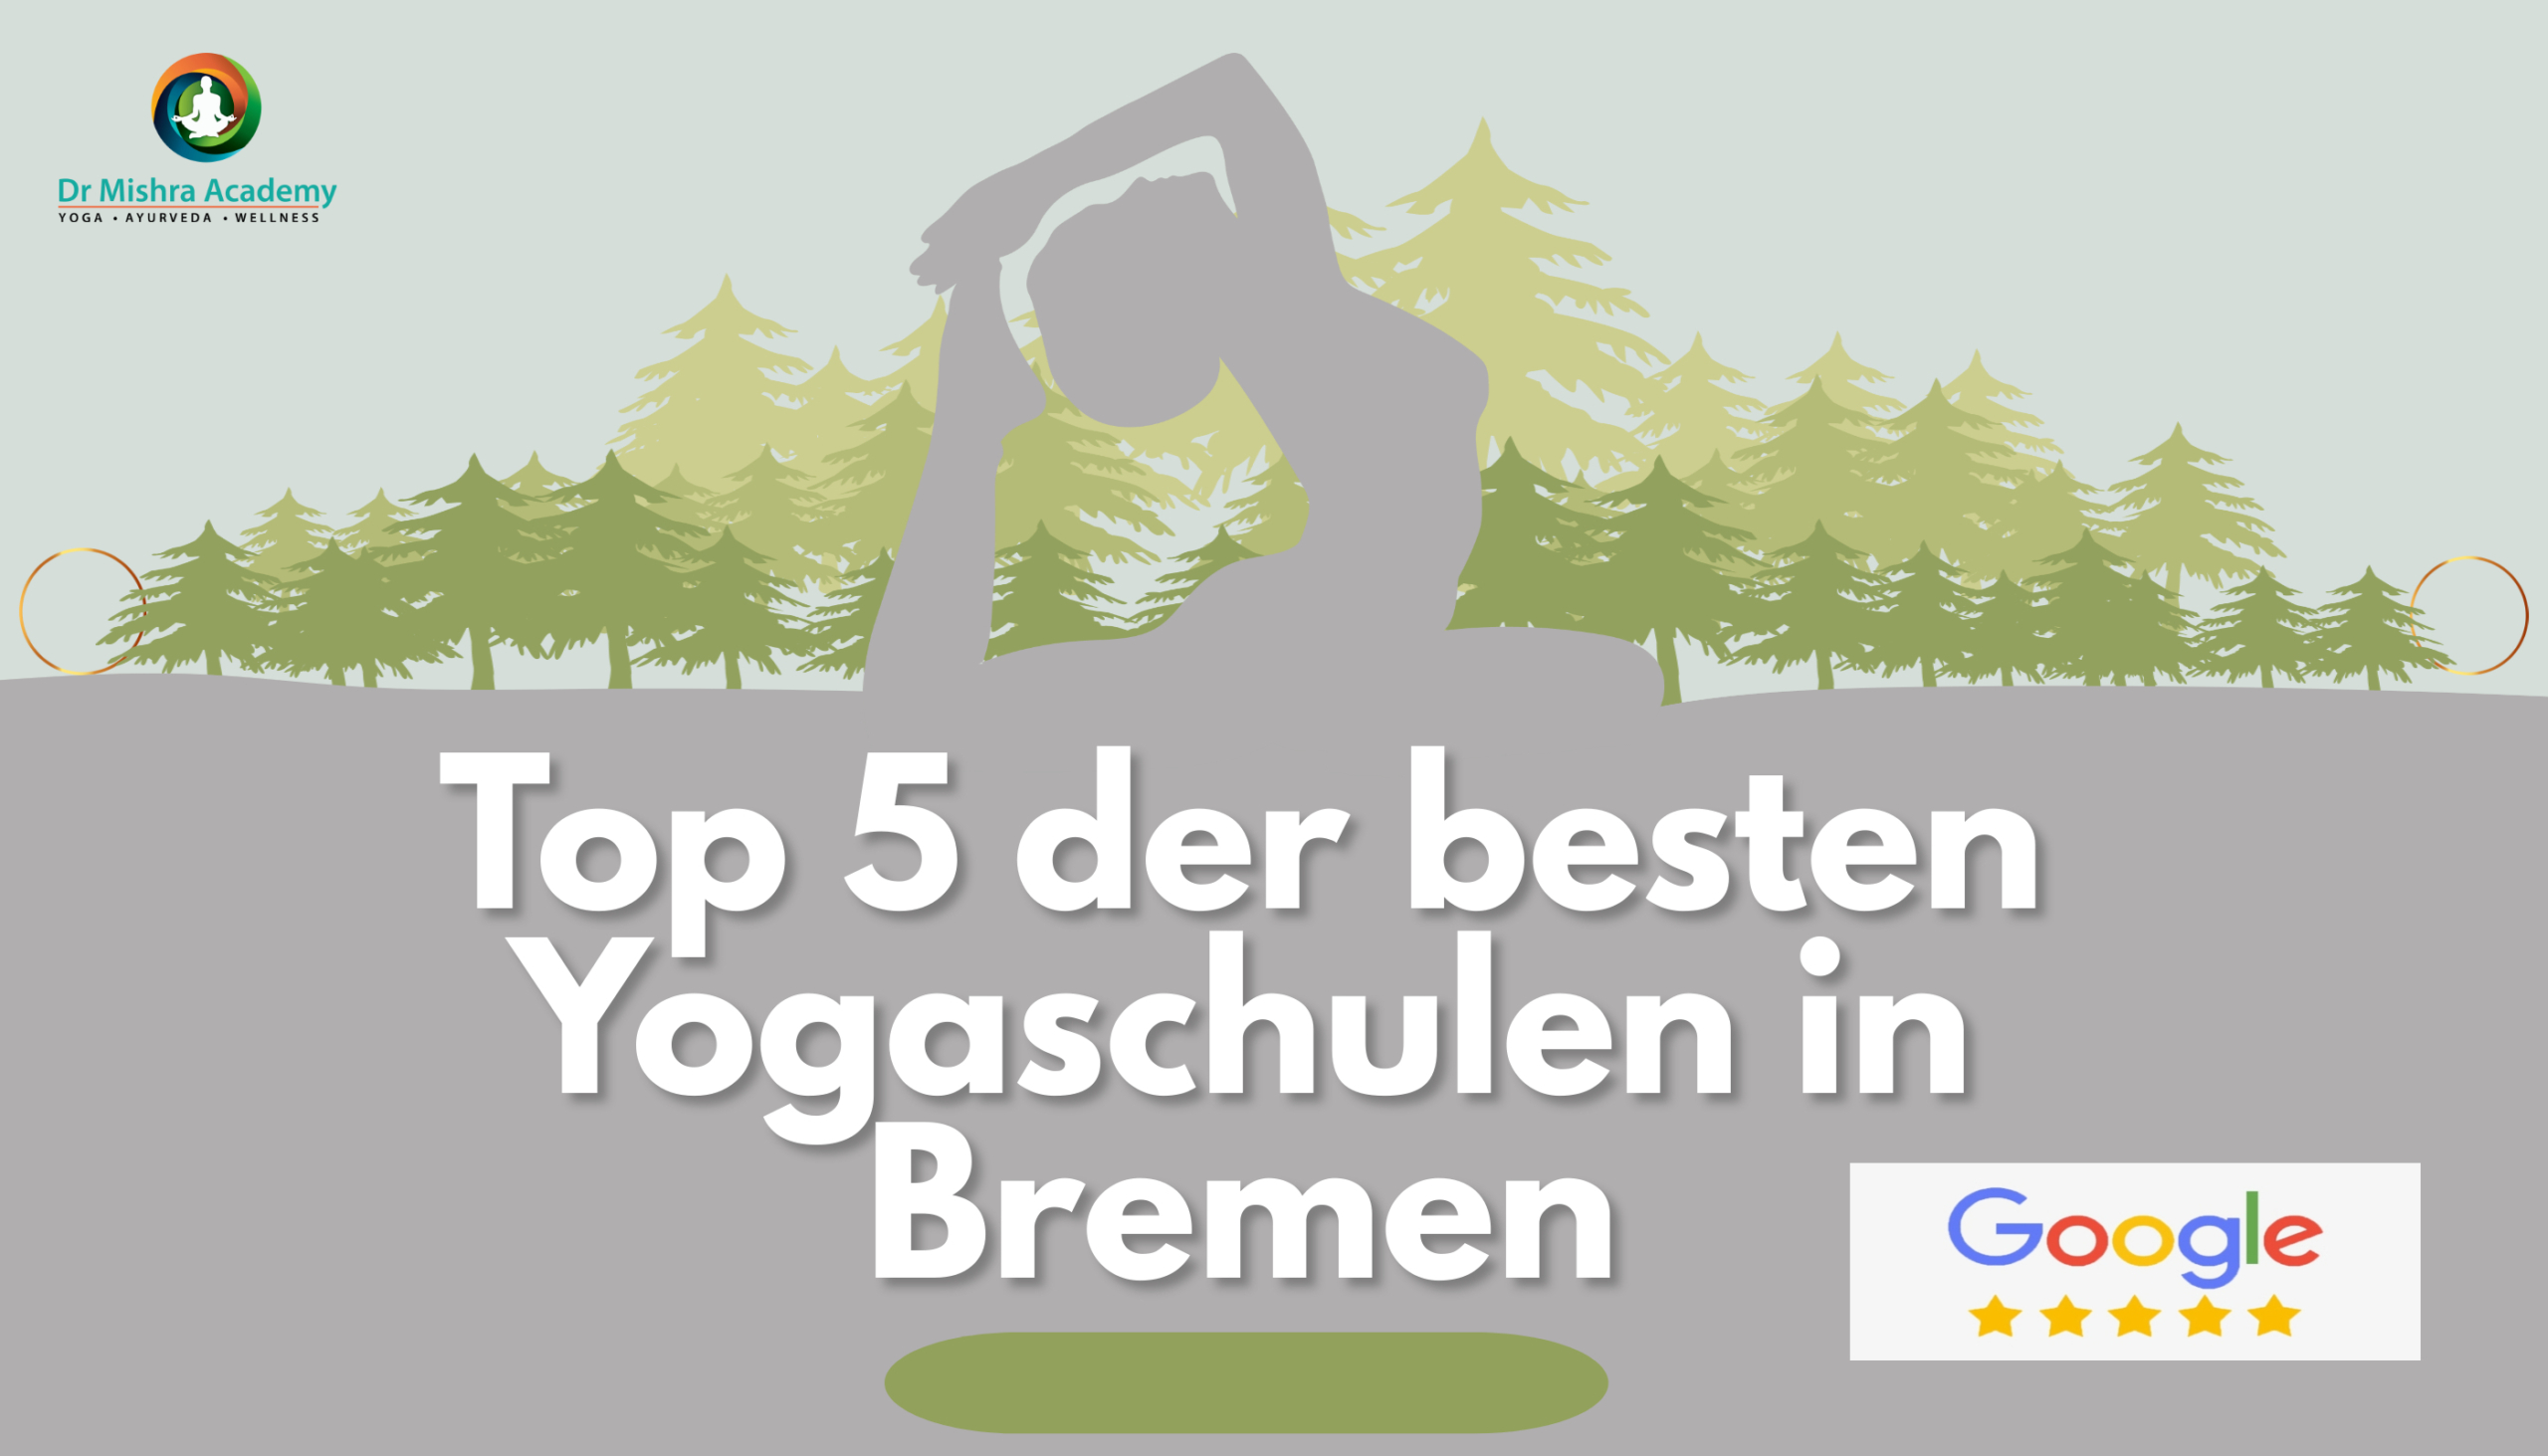 Top 5 der besten Yogaschulen in Bremen, basierend auf Google-Bewertungen